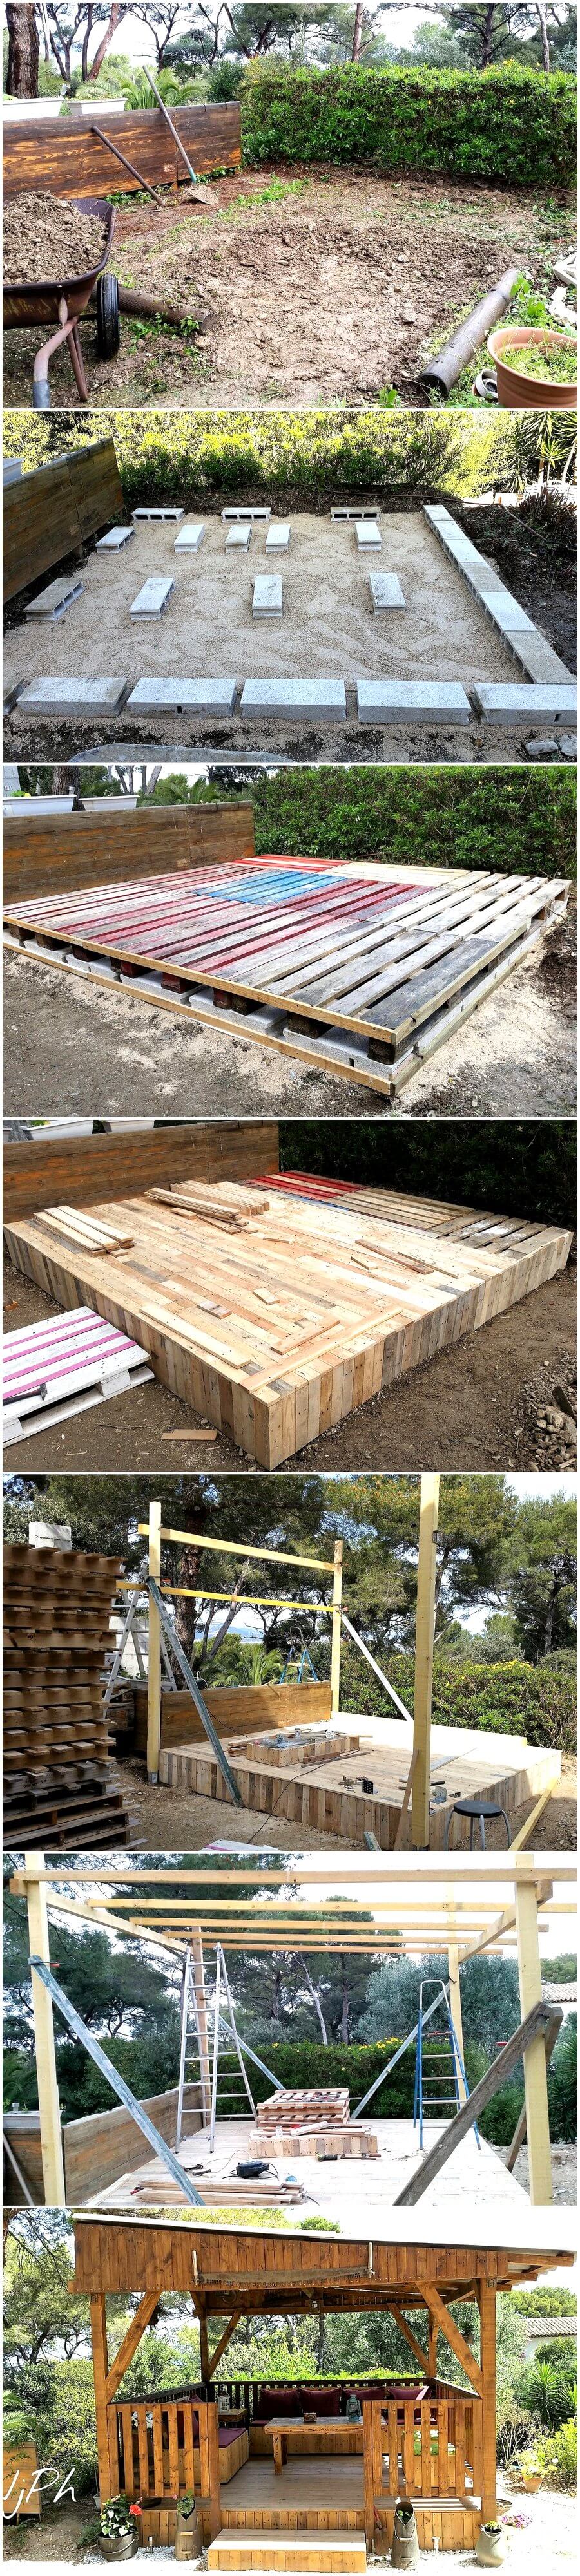 DIY Wood Pallet Garden Gazebo Deck with Furniture